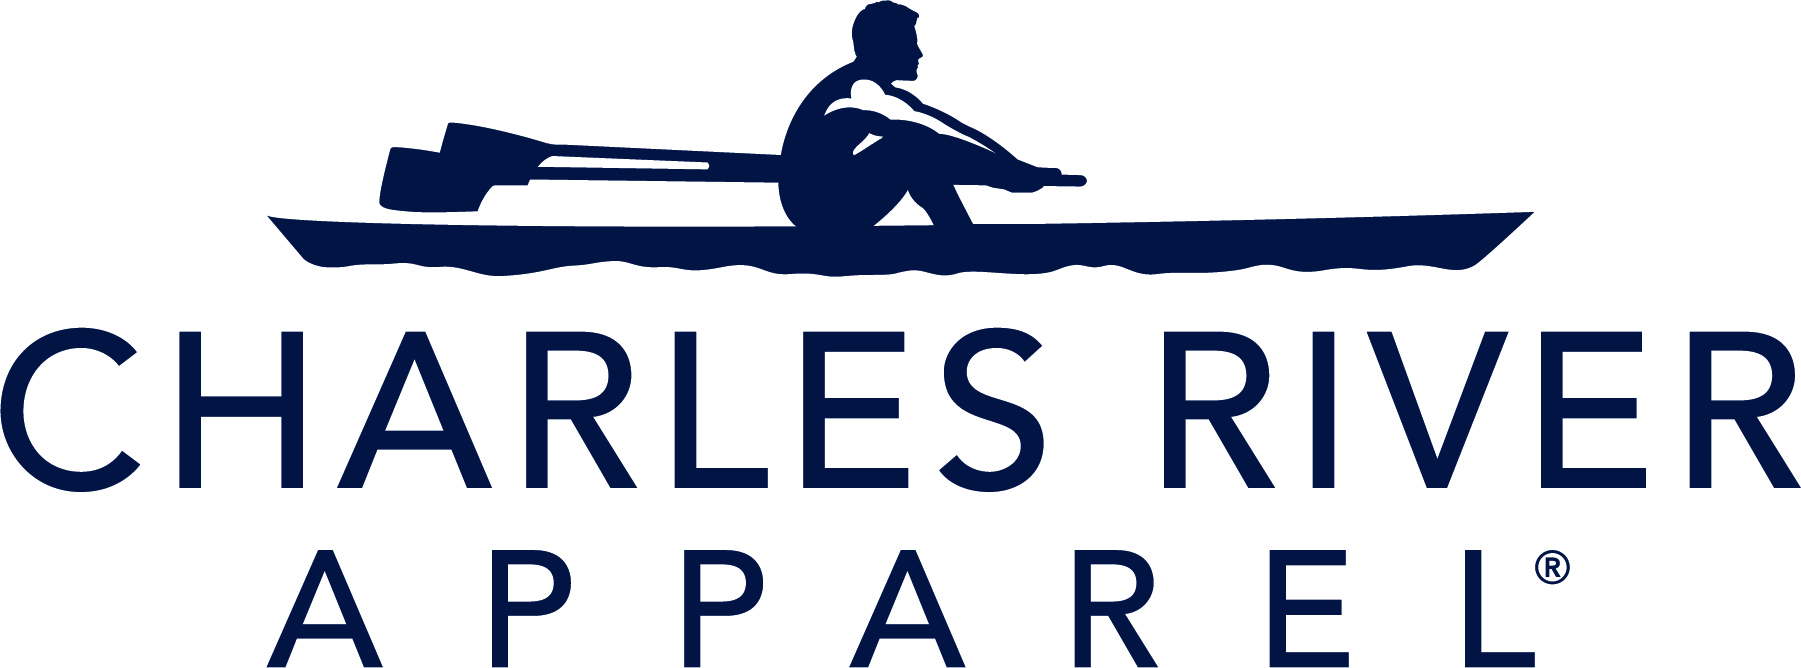 Charles River Apparel Blue Logo (White background) .jpeg file - Jason Lipsett.jpg